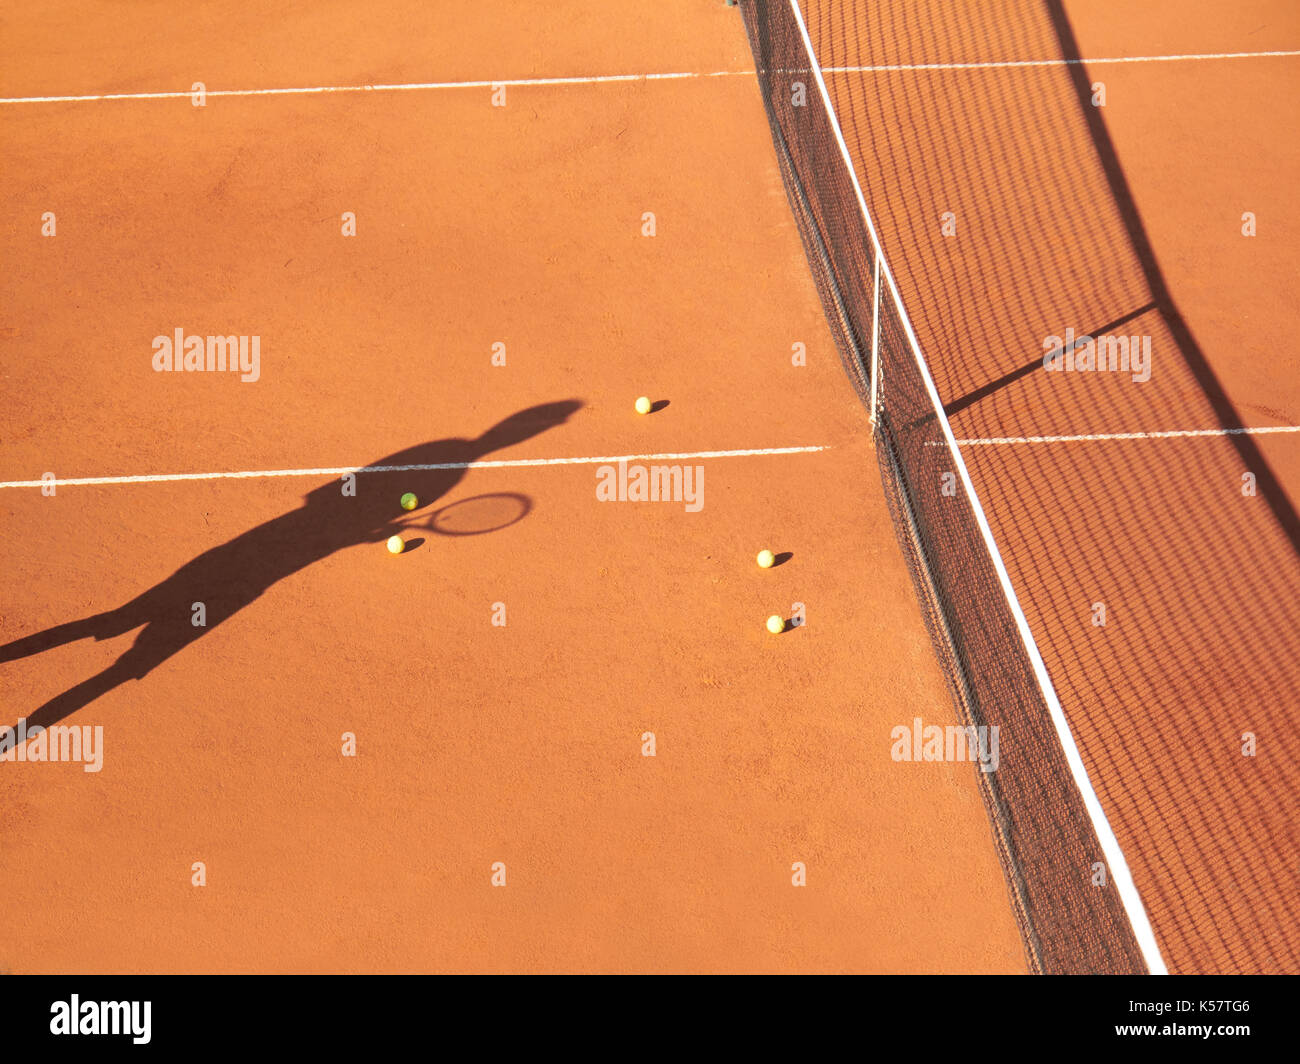 Schatten der Tennisspieler an Net mit scatttered Tennis Bälle auf Sandplatz Stockfoto